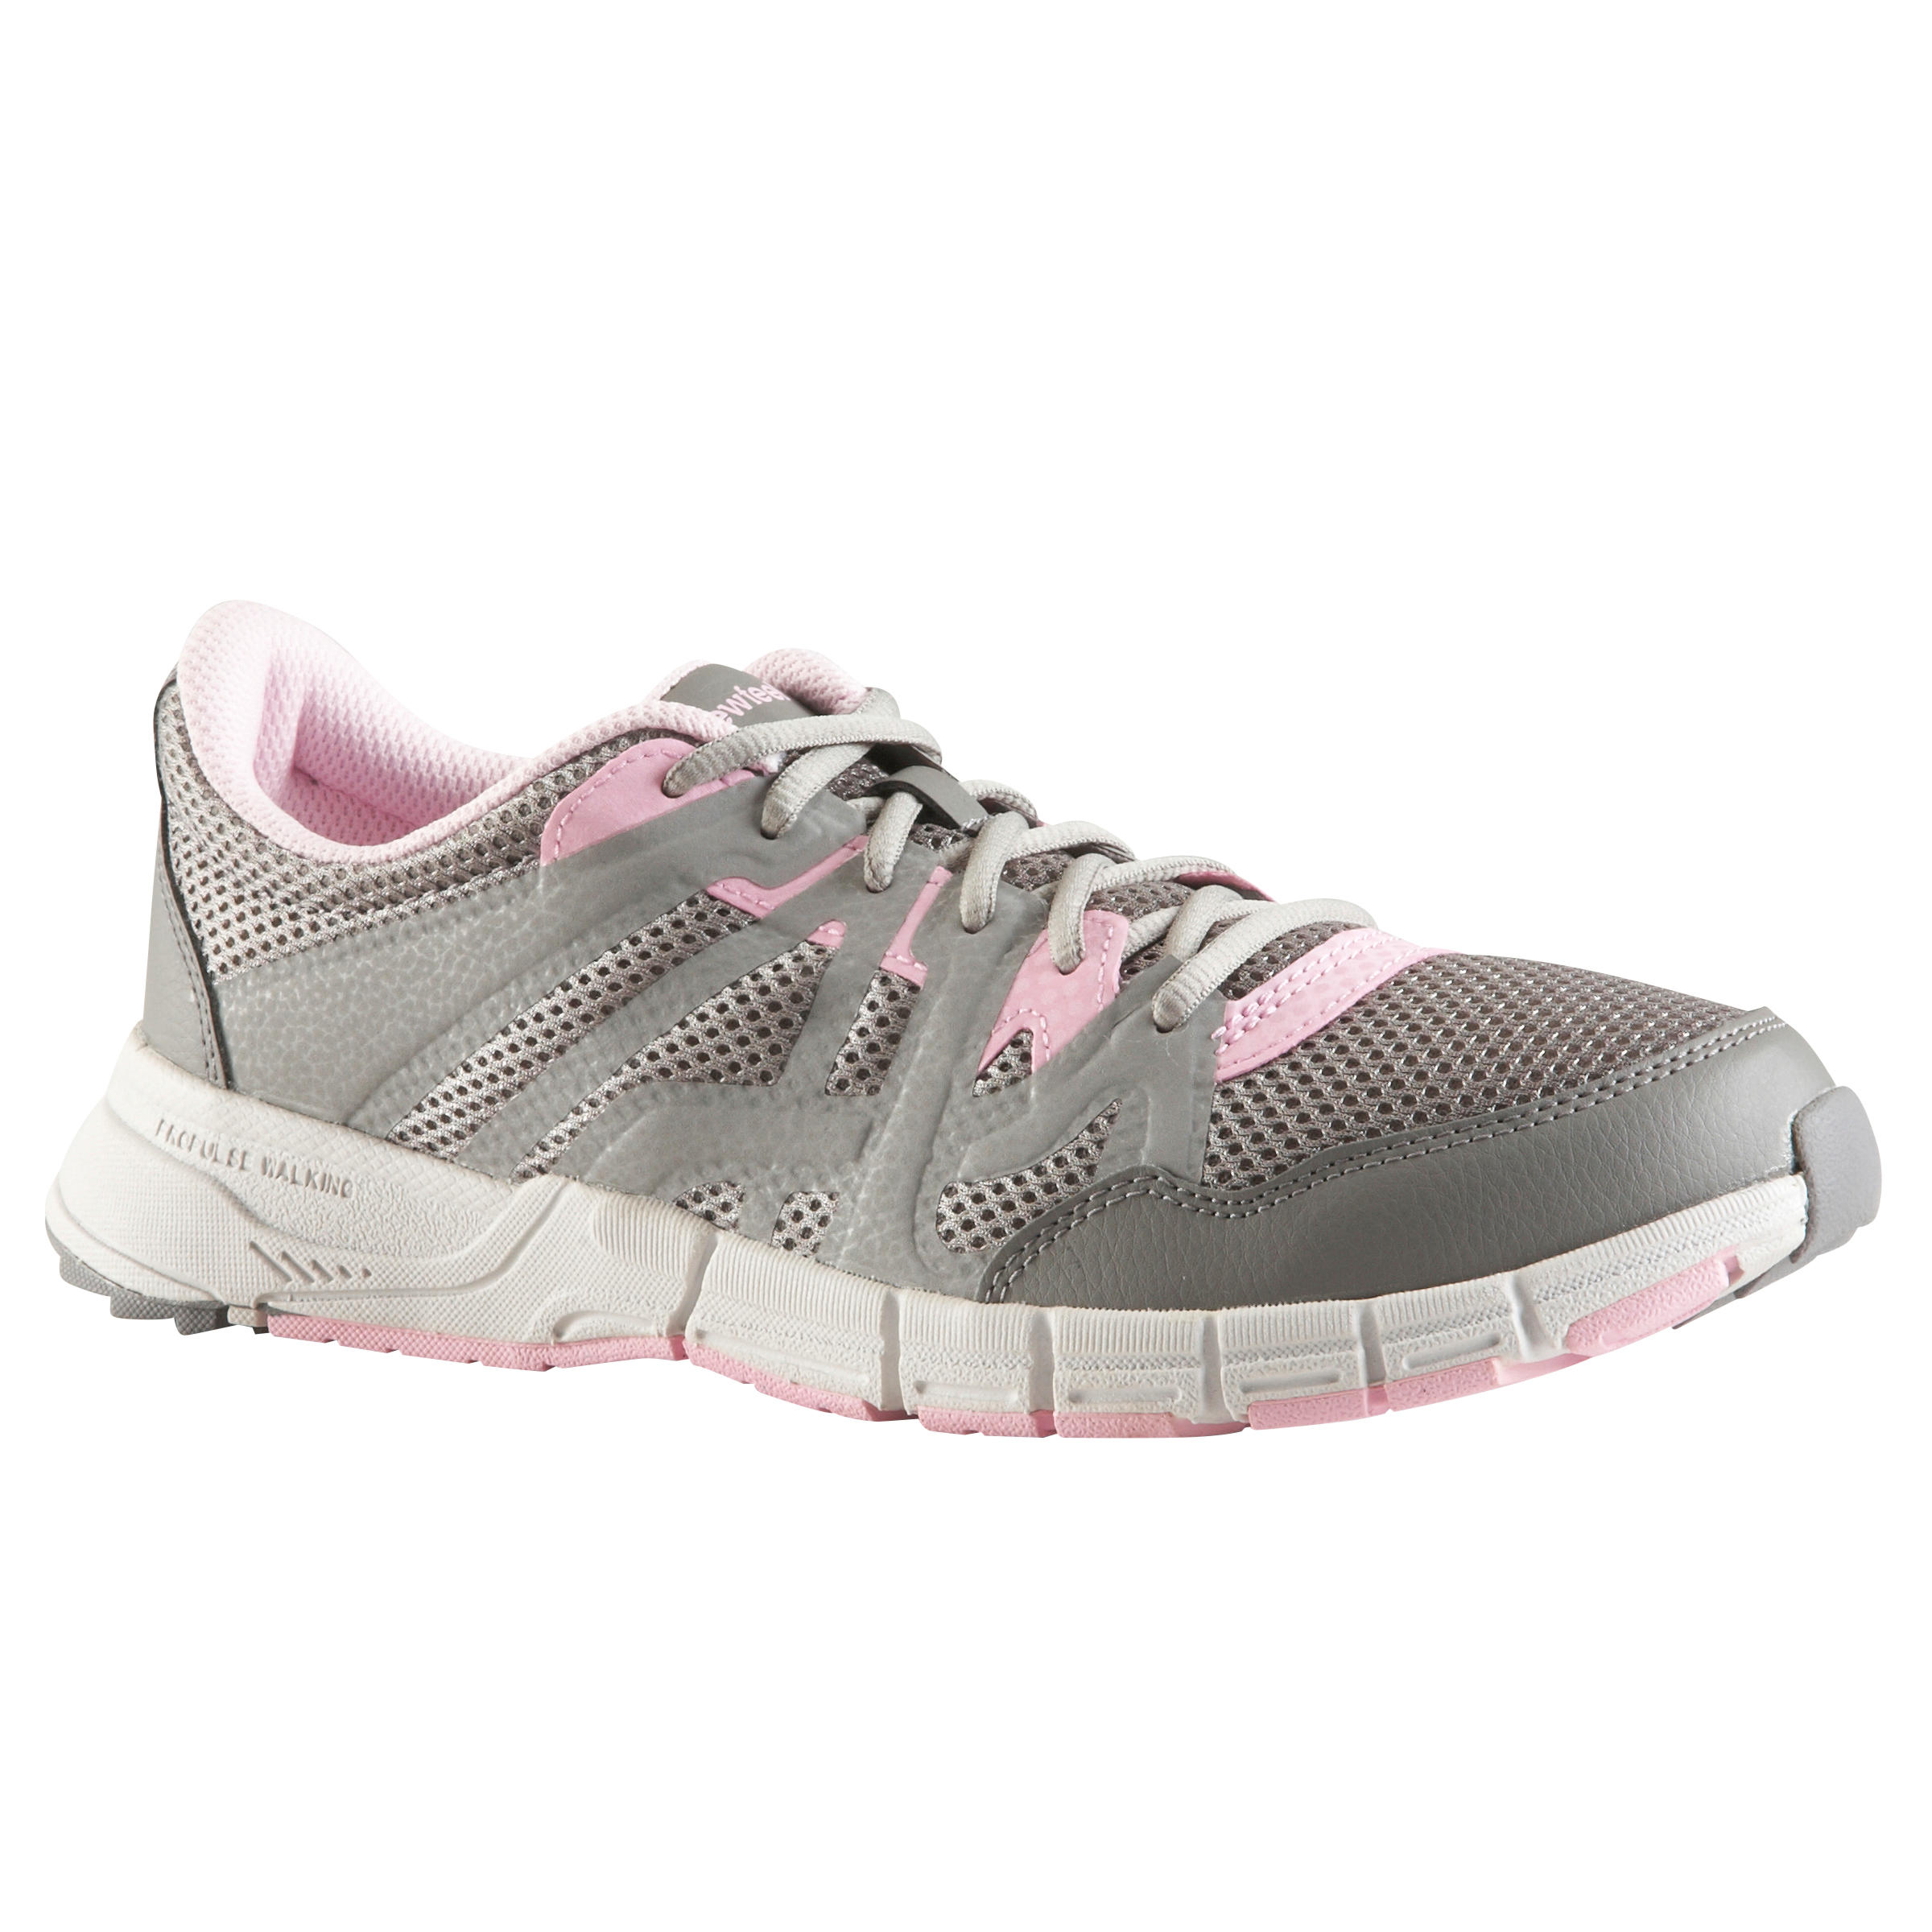 NEWFEEL Propulse Walk 200 Women's Fast Walking Shoes - Light Grey/Pink